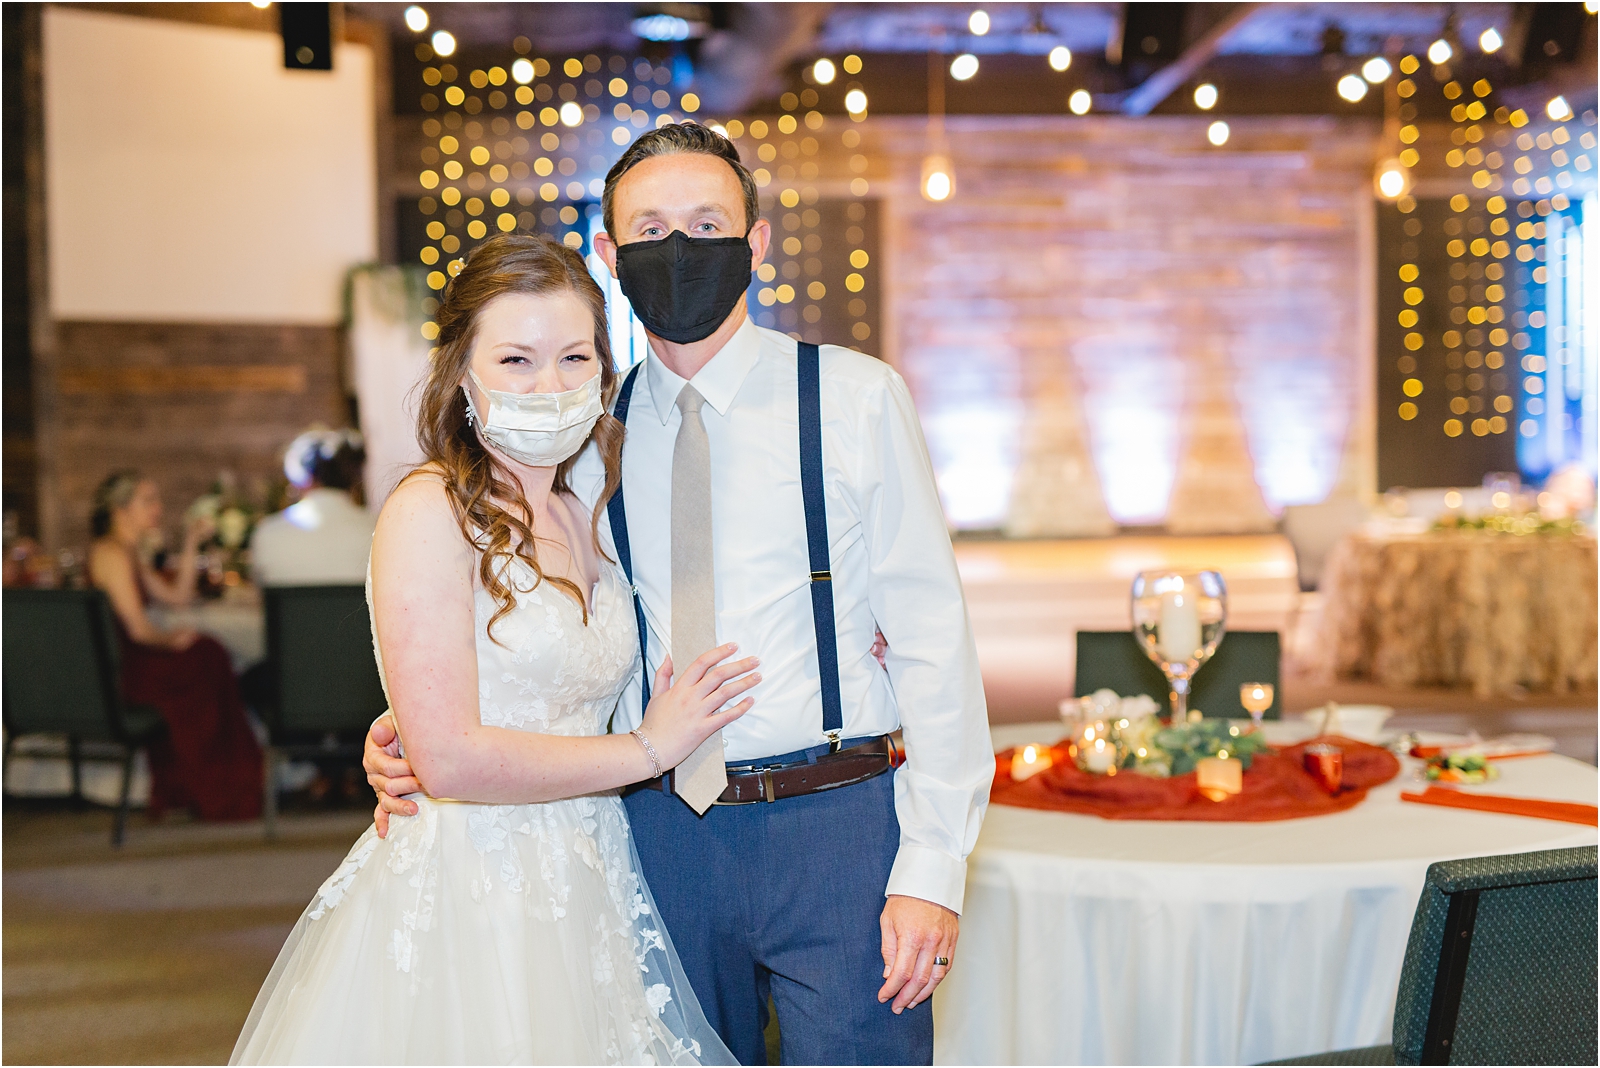 2020 covid wedding. Fancy masks to match their wedding attire. Destination Wedding - TX